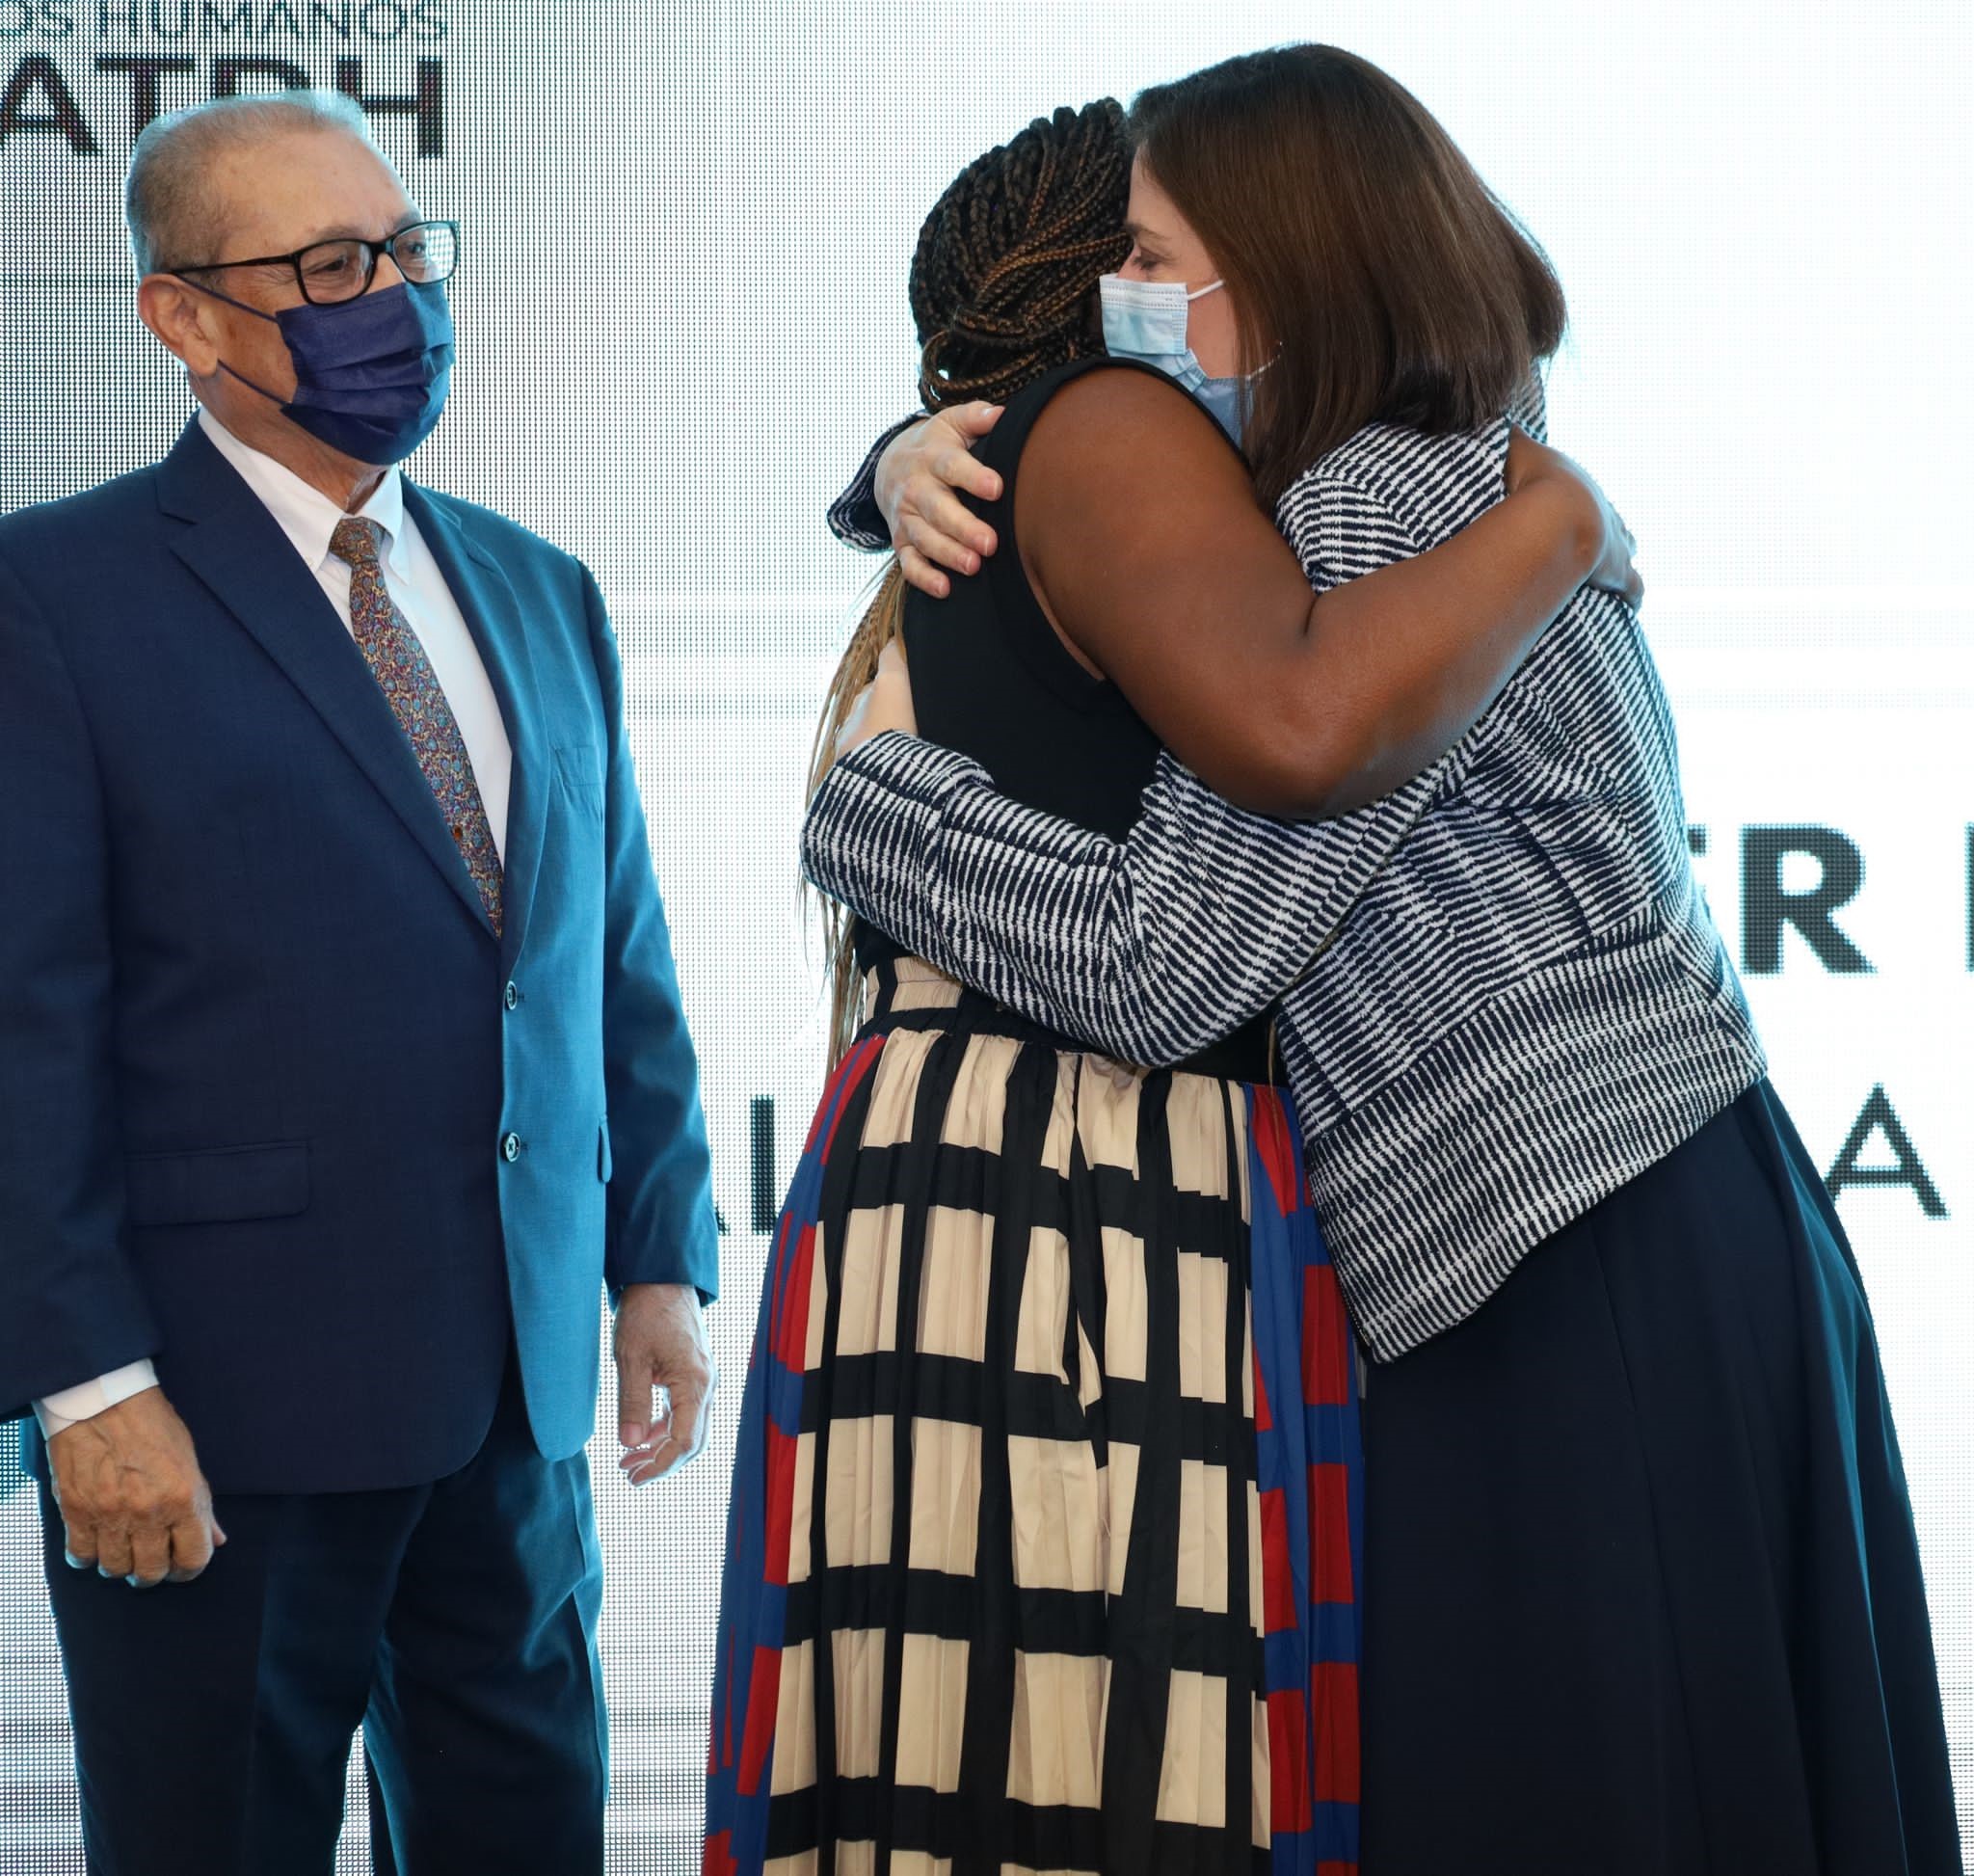 Alicia Ayala Sanjurjo y la Jueza Presidenta del Tribunal Supremo, Hon. Maite D. Oronoz Rodríguez, se abrazaron al anunciarse que Ayala Sanjurjo cargaría con el primer premio.